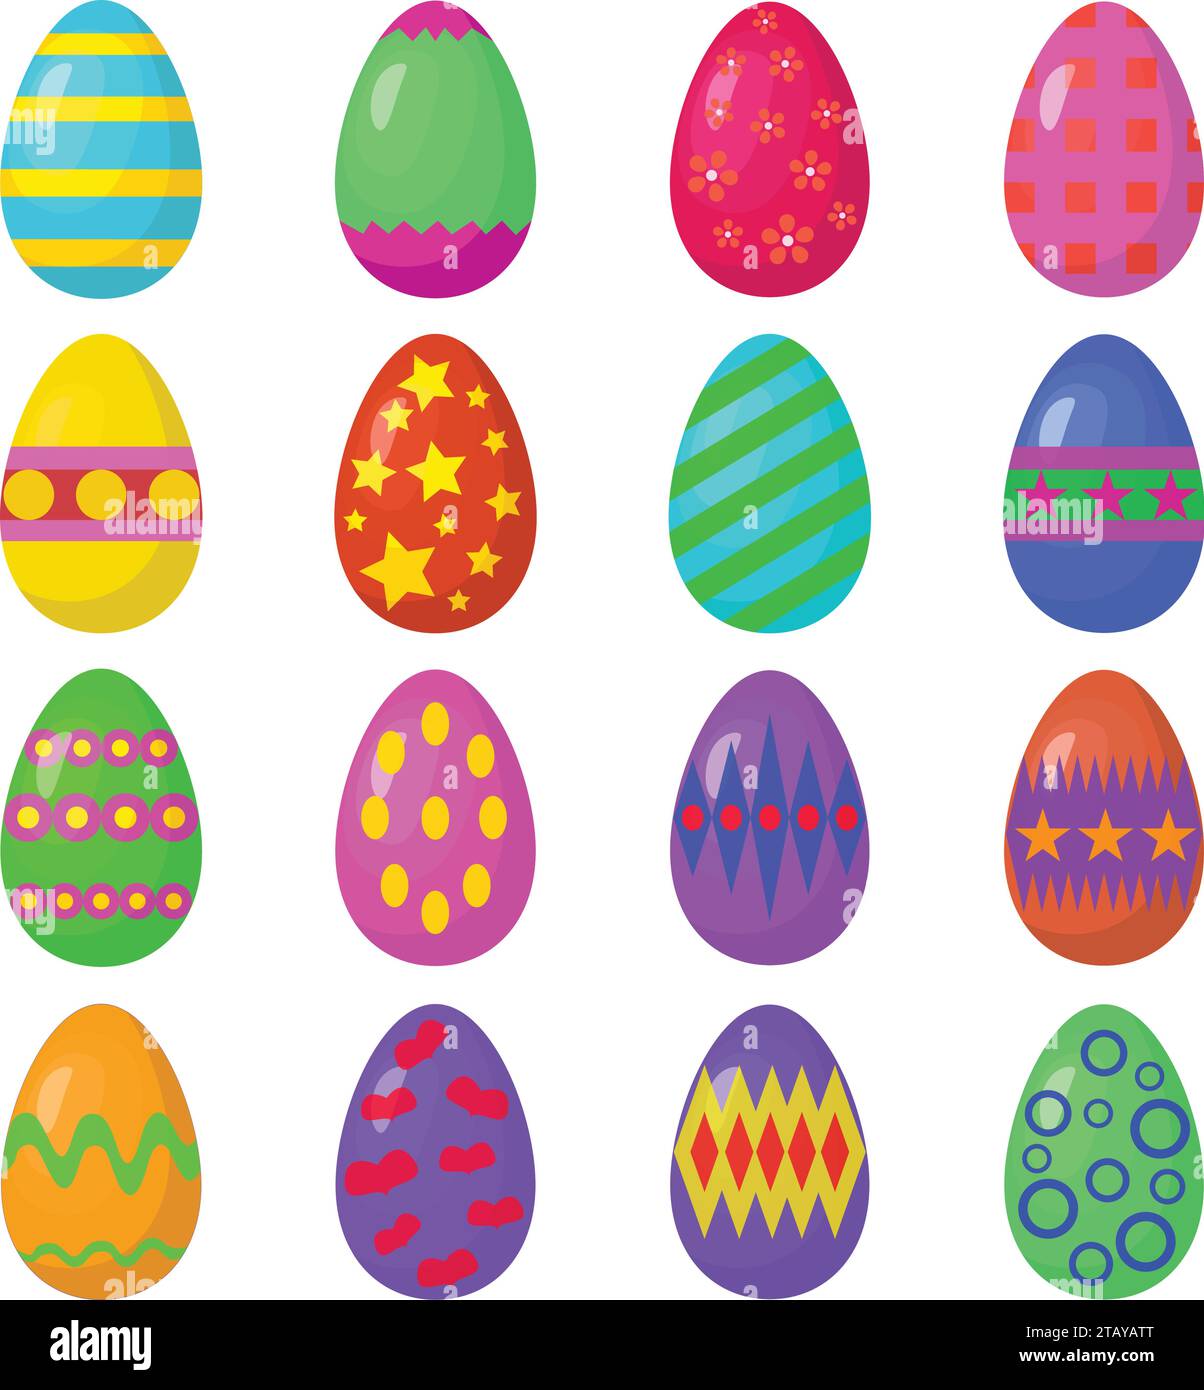 Cartoni animati Happy easter simpatici set vettoriale di uova colorate. Simbolo tradizionale di Pasqua isolato su sfondo bianco. Illustrazione vettoriale Illustrazione Vettoriale